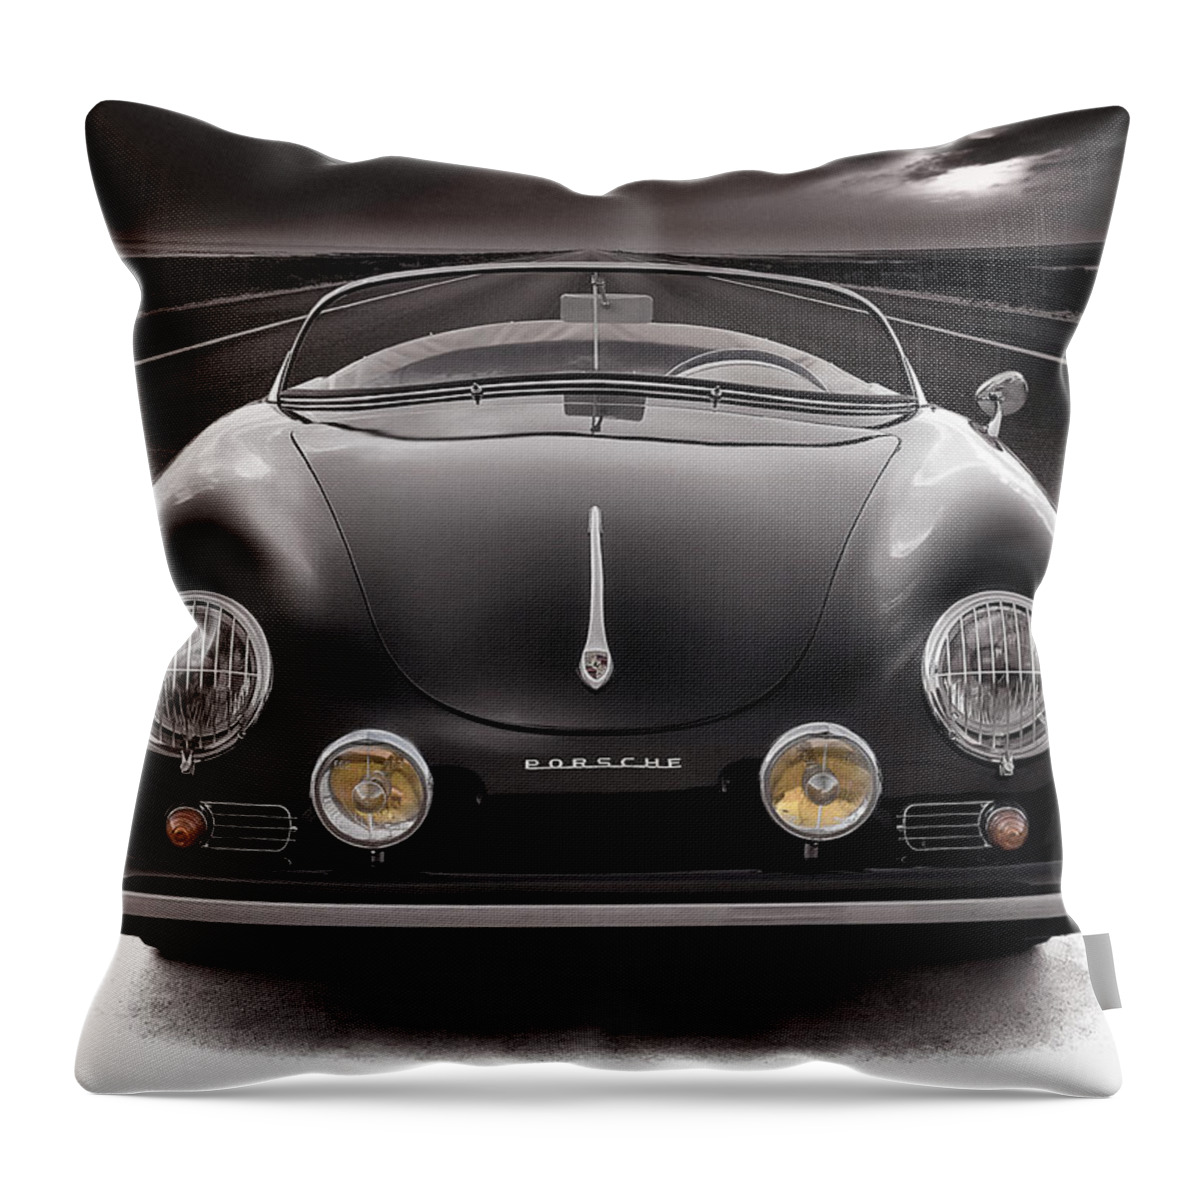 Porsche Throw Pillow featuring the photograph Black Porsche Speedster by Douglas Pittman